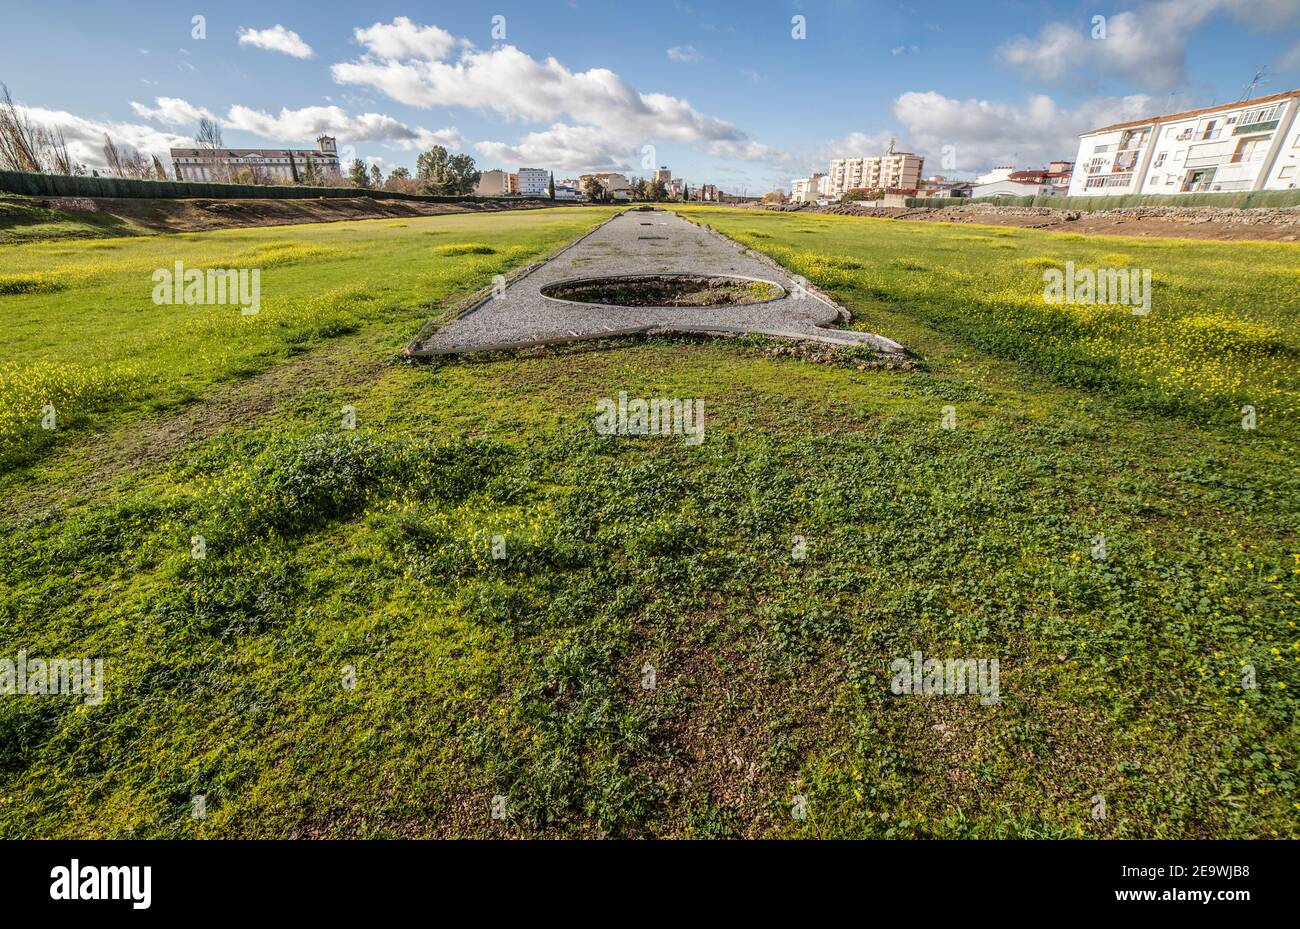 Meta secunda of Imperial City Circus of Emerita Augusta, Merida, Spanien. Eines der größten des römischen Reiches Stockfoto